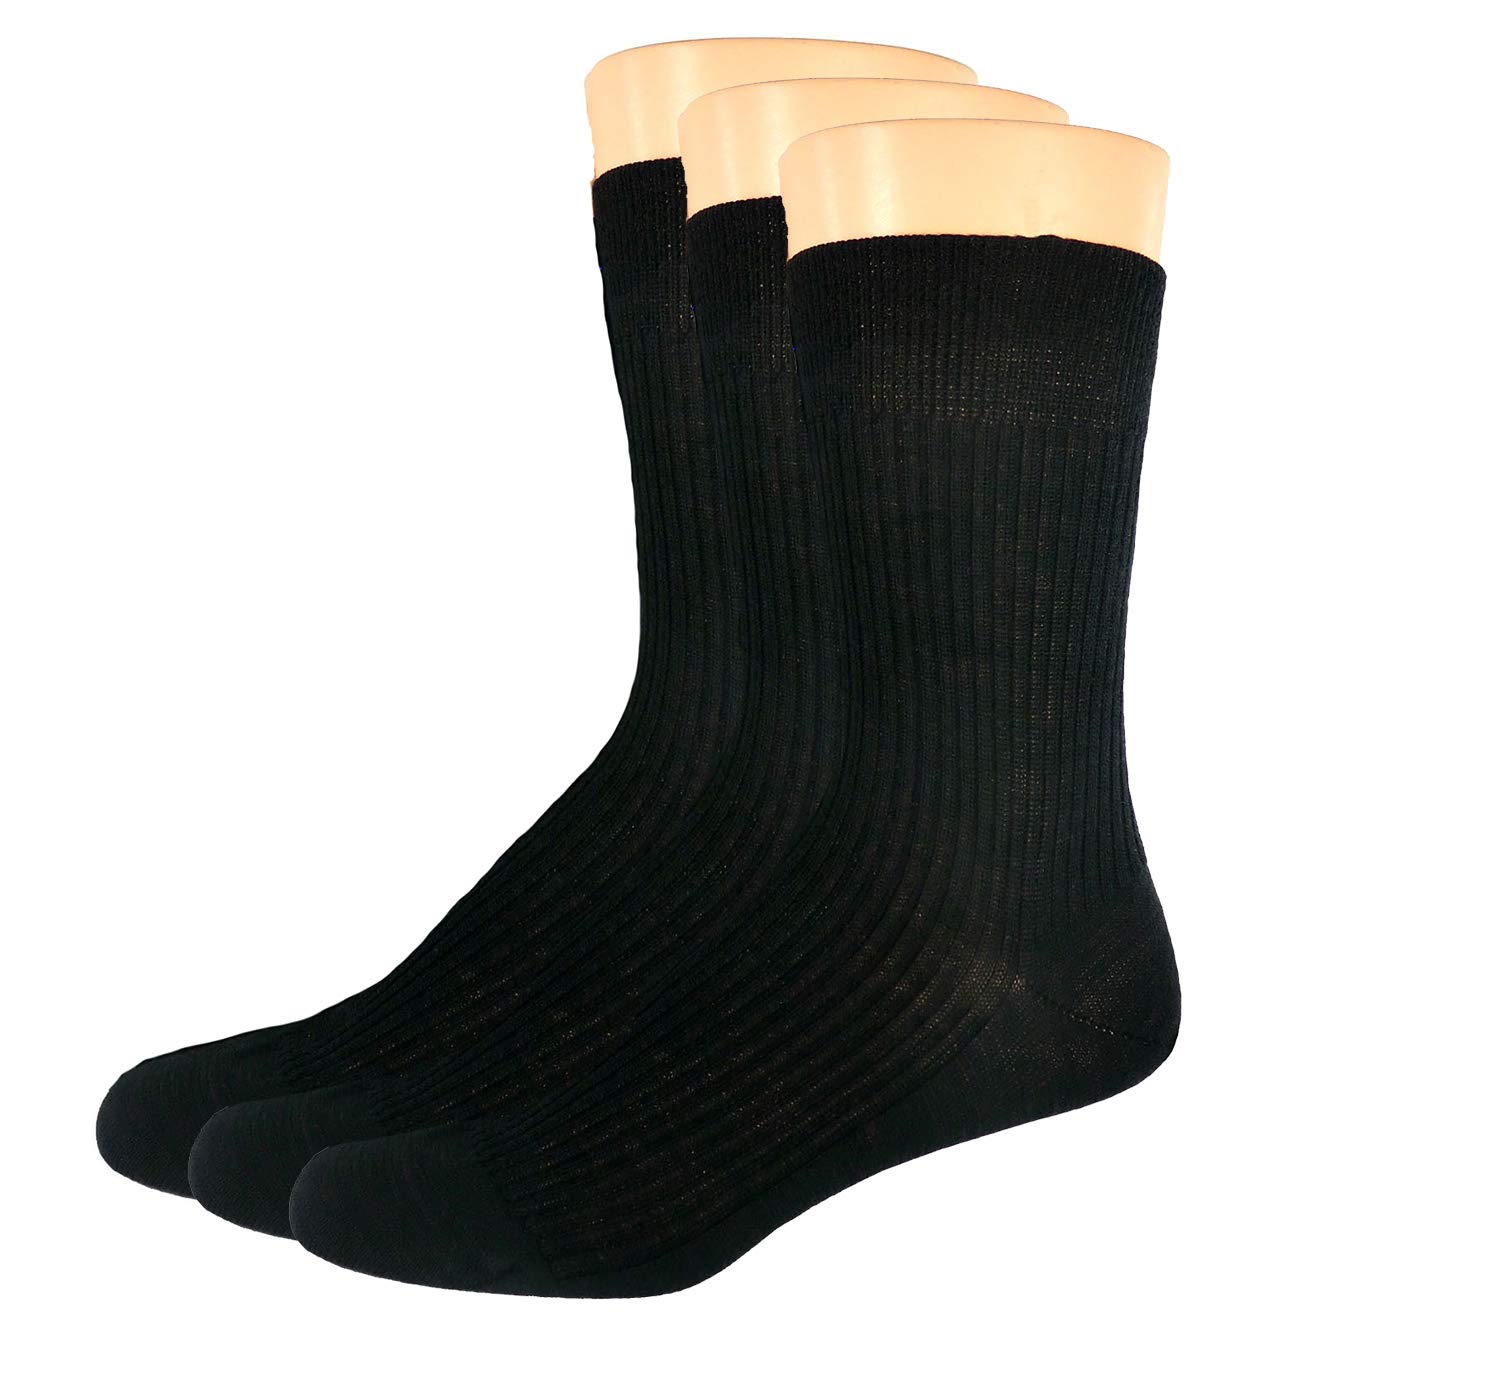 Socken für Damen & Herren, 1 oder 3 Paar Schafwollsocken 100% Wolle aus reiner Schurwolle, warm, atmungsaktiv, grau, schwarz, natur, Farben alle:Dreierpack schwarz, Größe:49/50